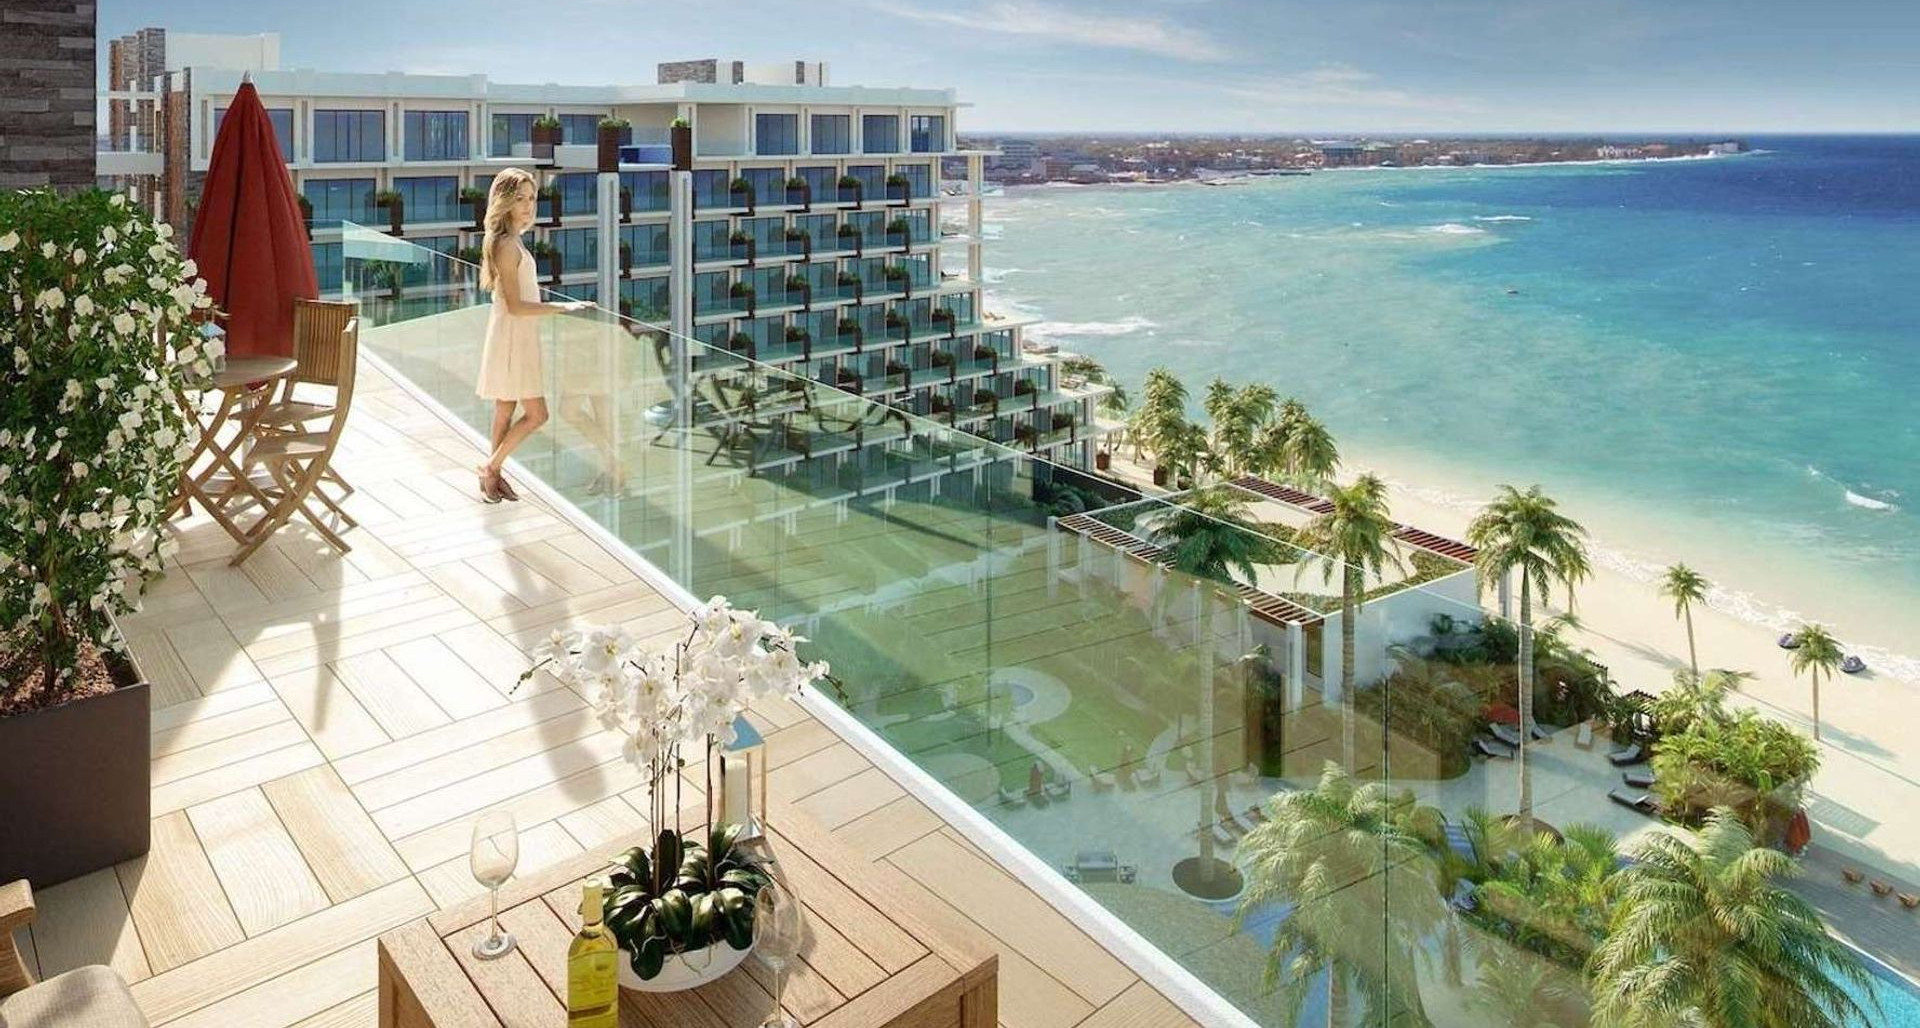 Grand Hyatt Beach Resort – Penthouse